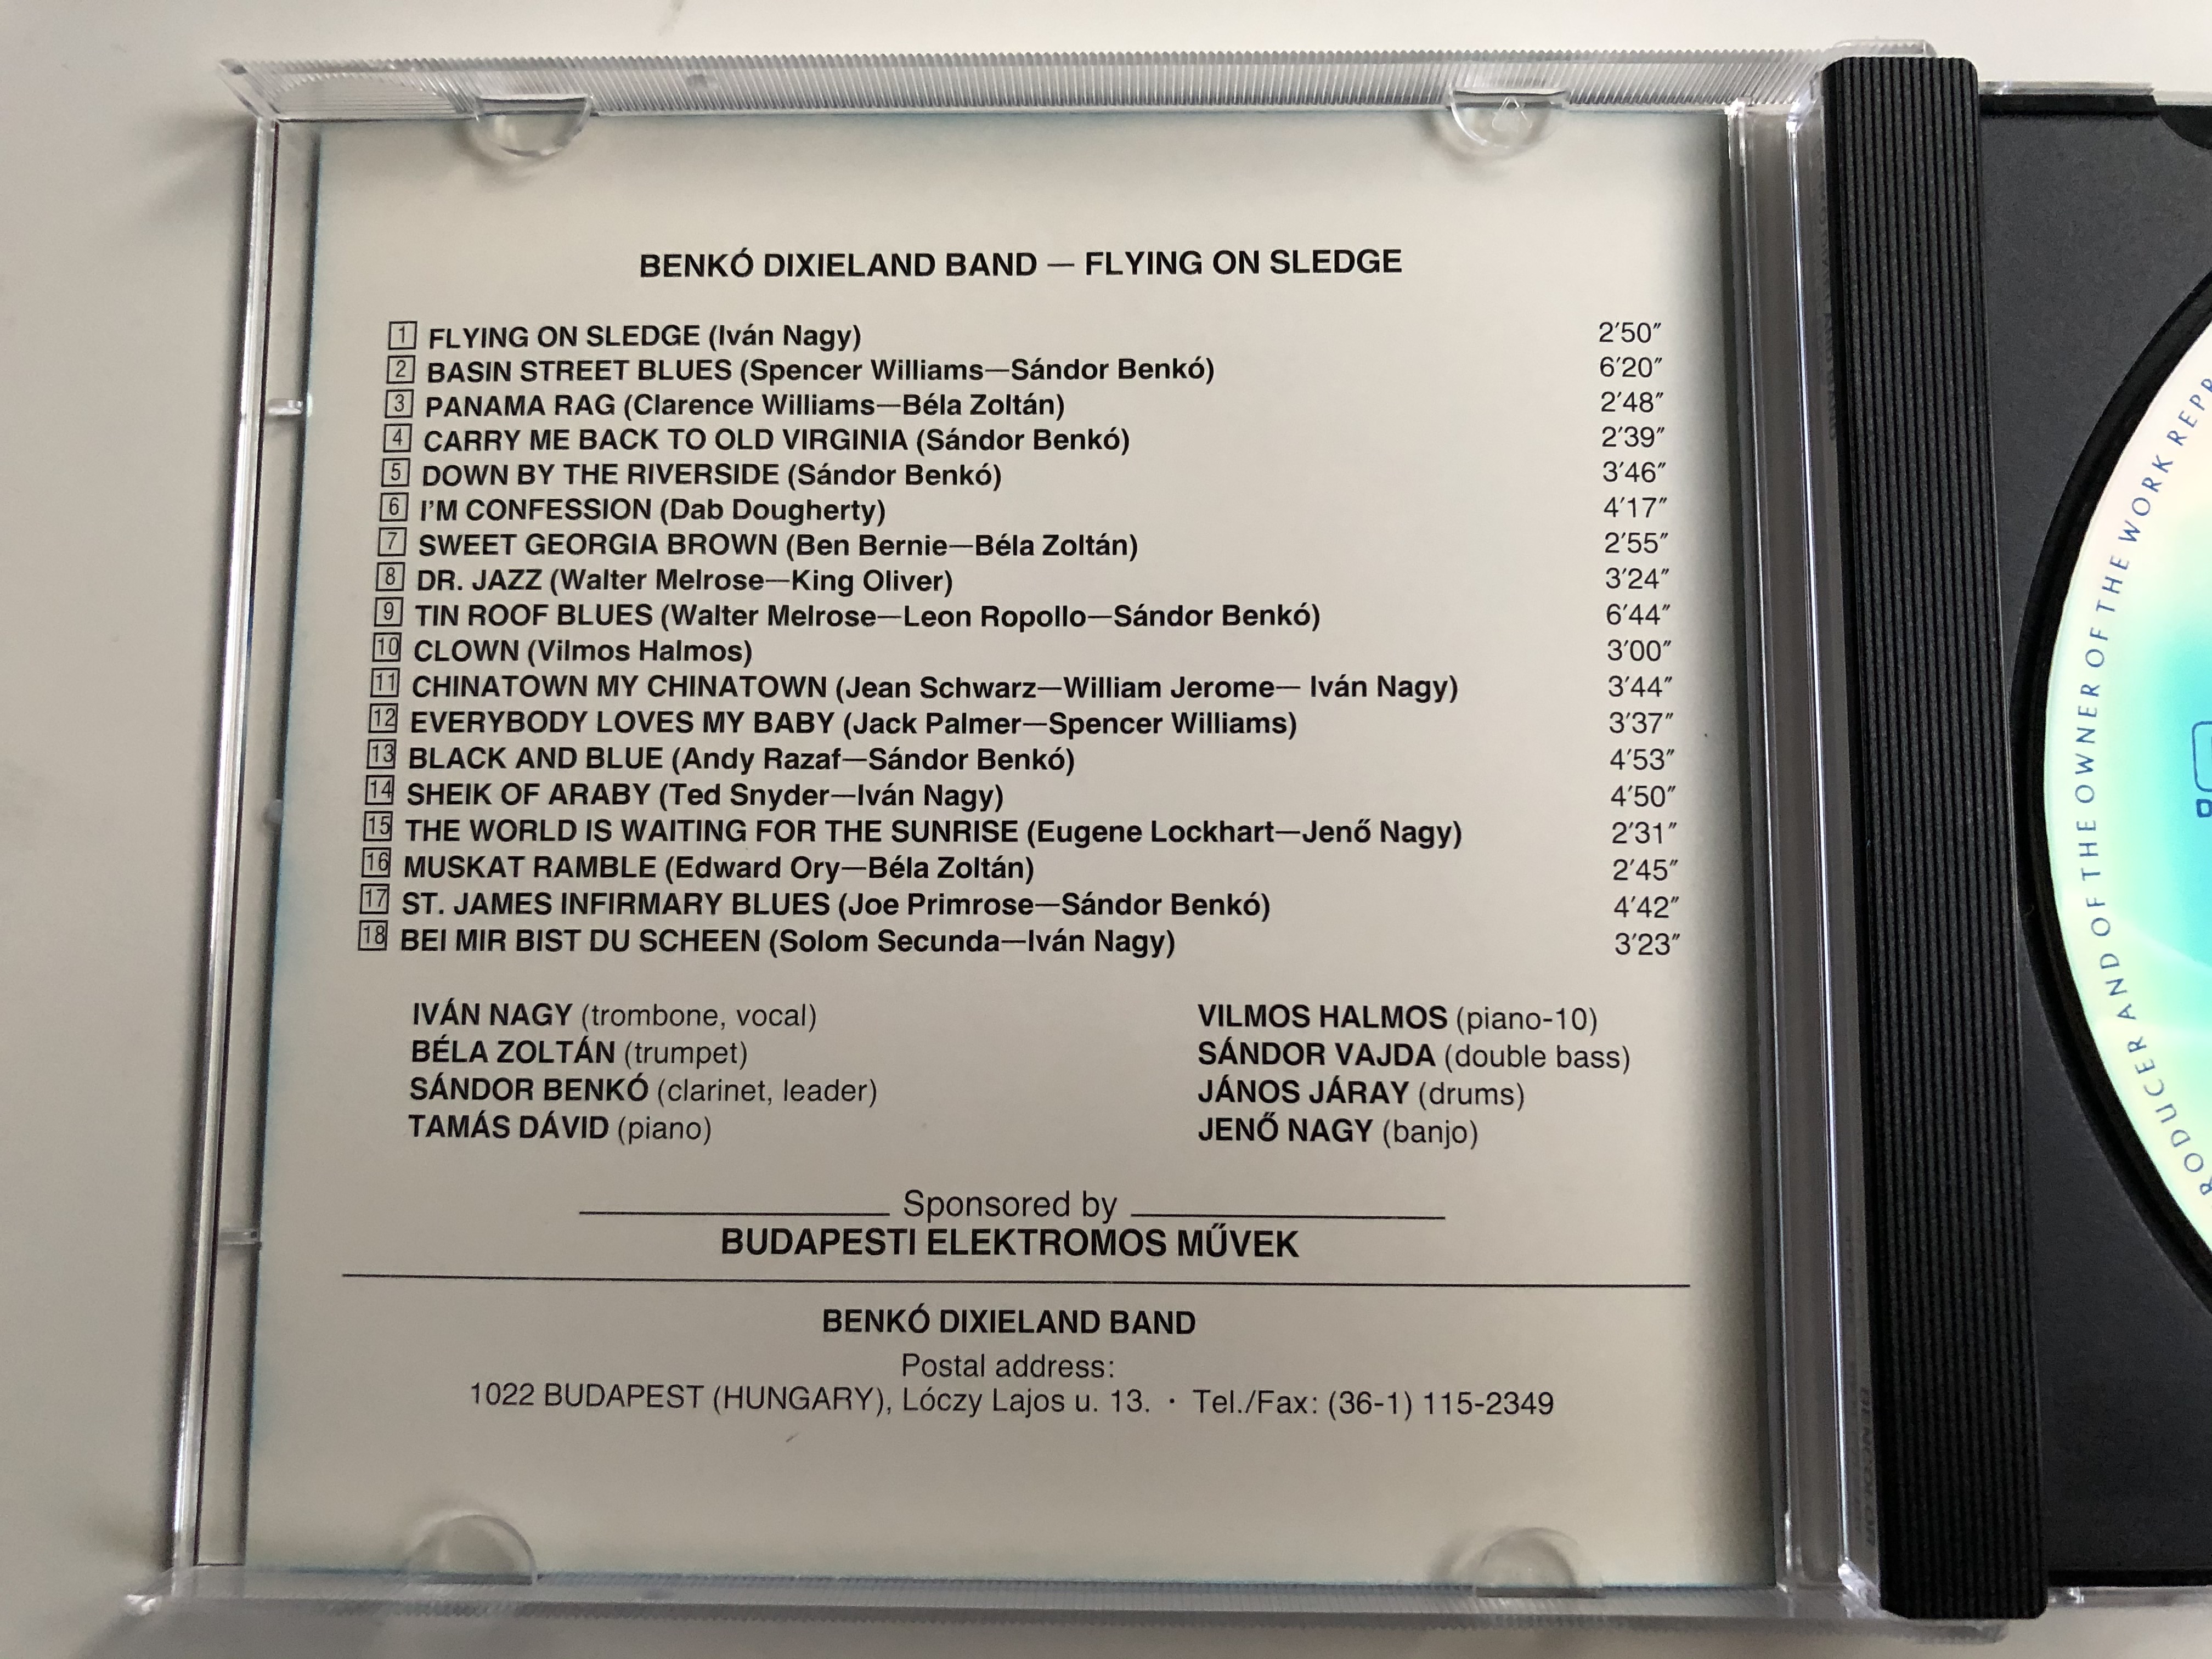 benk-dixieland-hungary-band-flying-on-sledge-bencolor-audio-cd-1995-stereo-ben-cd-5401-2-.jpg